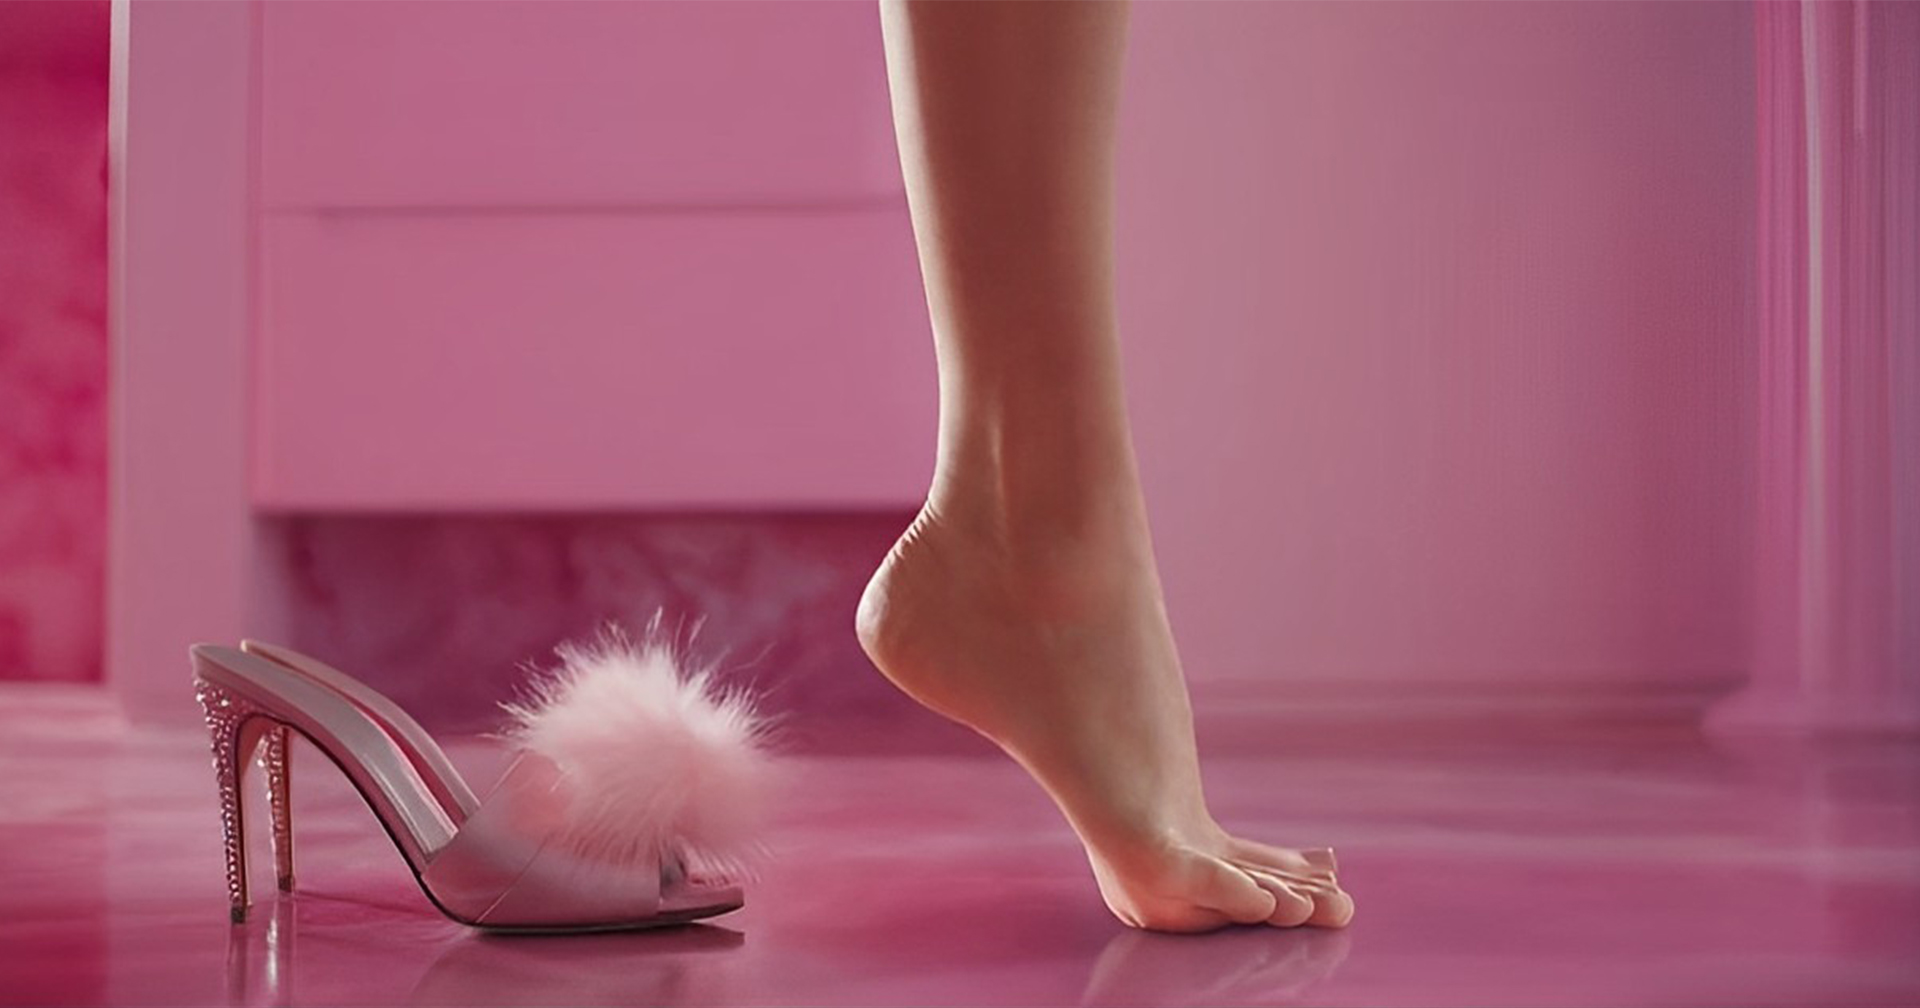 เท้าชั้นเอง! Margot Robbie เผย แสดงฉากสุดไวรัลในหนัง ‘Barbie’ ด้วย (เท้า) ตัวเองล้วน ๆ